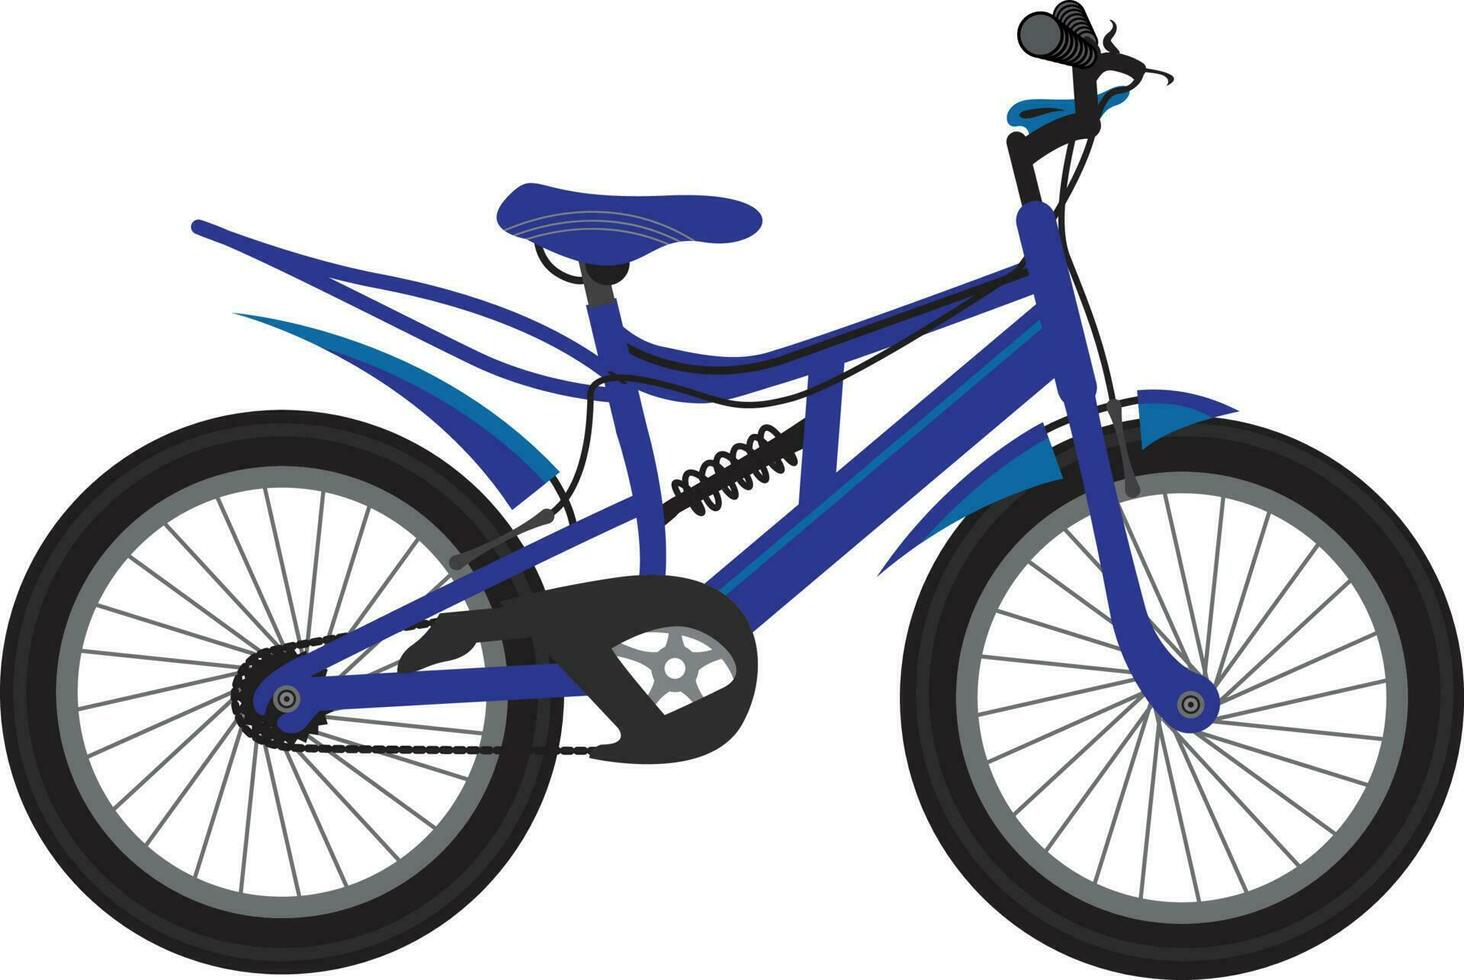 Ilustración de vector de bicicleta